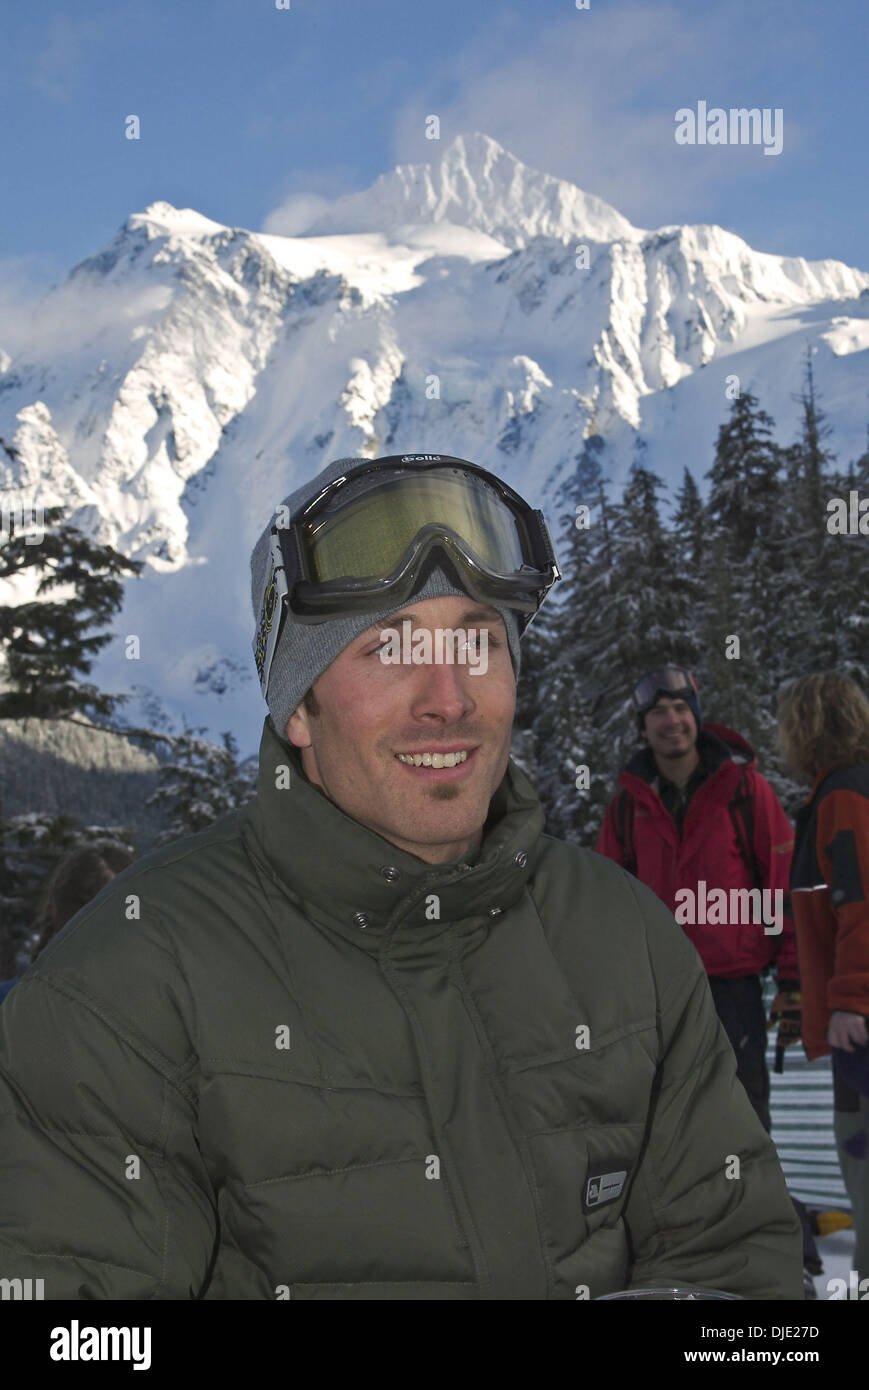 Feb 08, 2004; Mt. Baker, WA, EE.UU.; se ha visto aquí, primer ganador de medalla de oro en EE.UU. miembro del equipo de Snowboard cross Seth Wescott en la 20Mt anuales. Banco Baker eslalon. El evento atrae a corredores de todo el mundo, todos compitiendo por el codiciado ''Golden Duct Tape Award.'', conocida como una de las principales casas de snowboard Mt Baker ha producido legendarios como el difunto Craig Kell Foto de stock